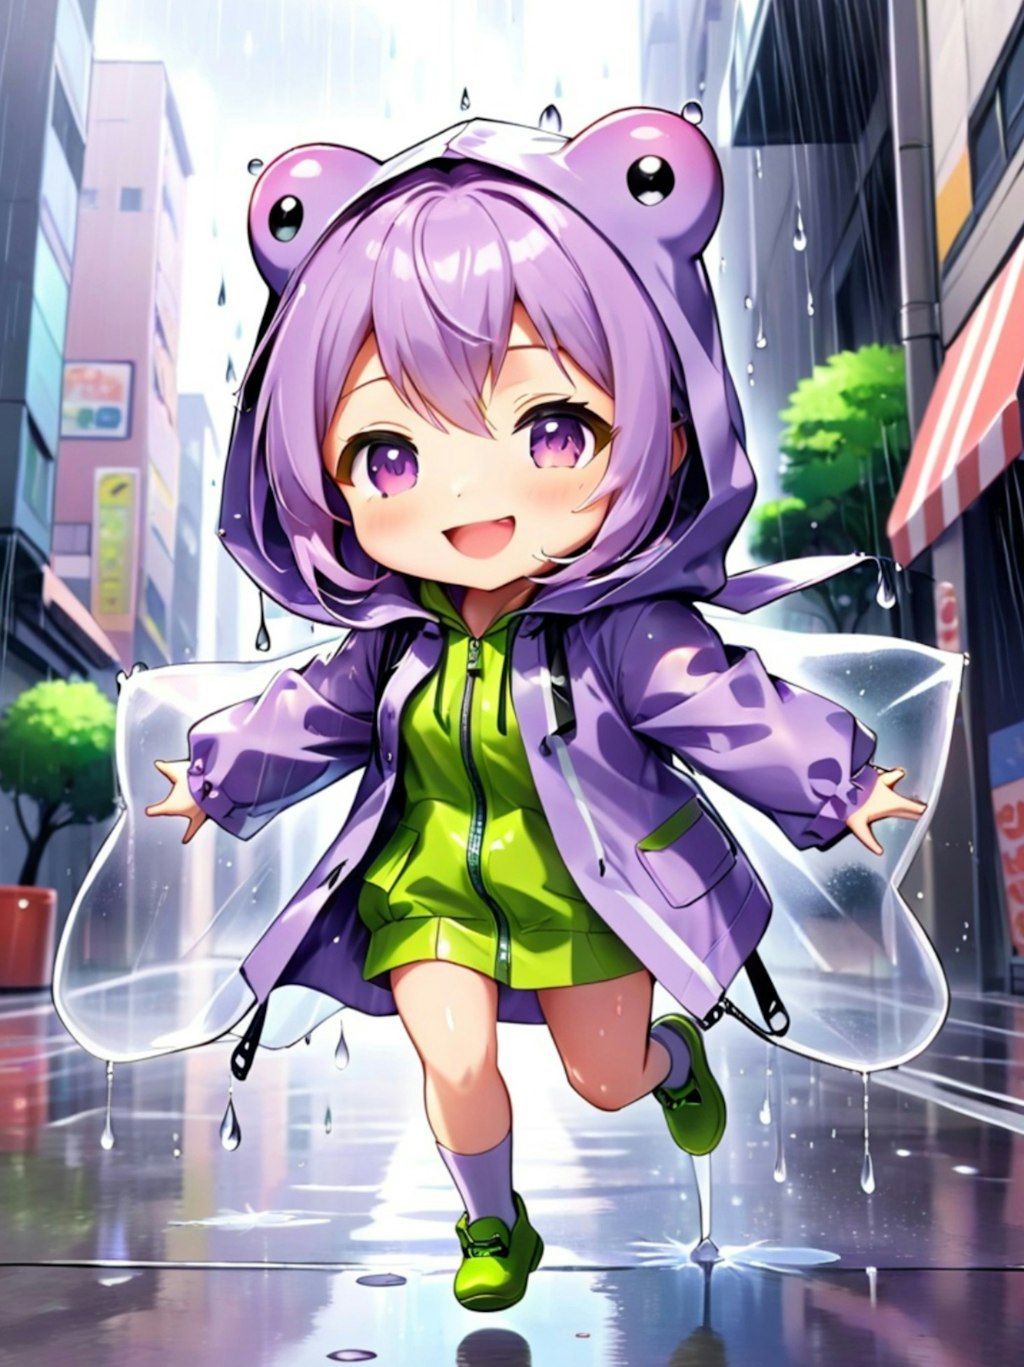 雨と紫髪ちゃん